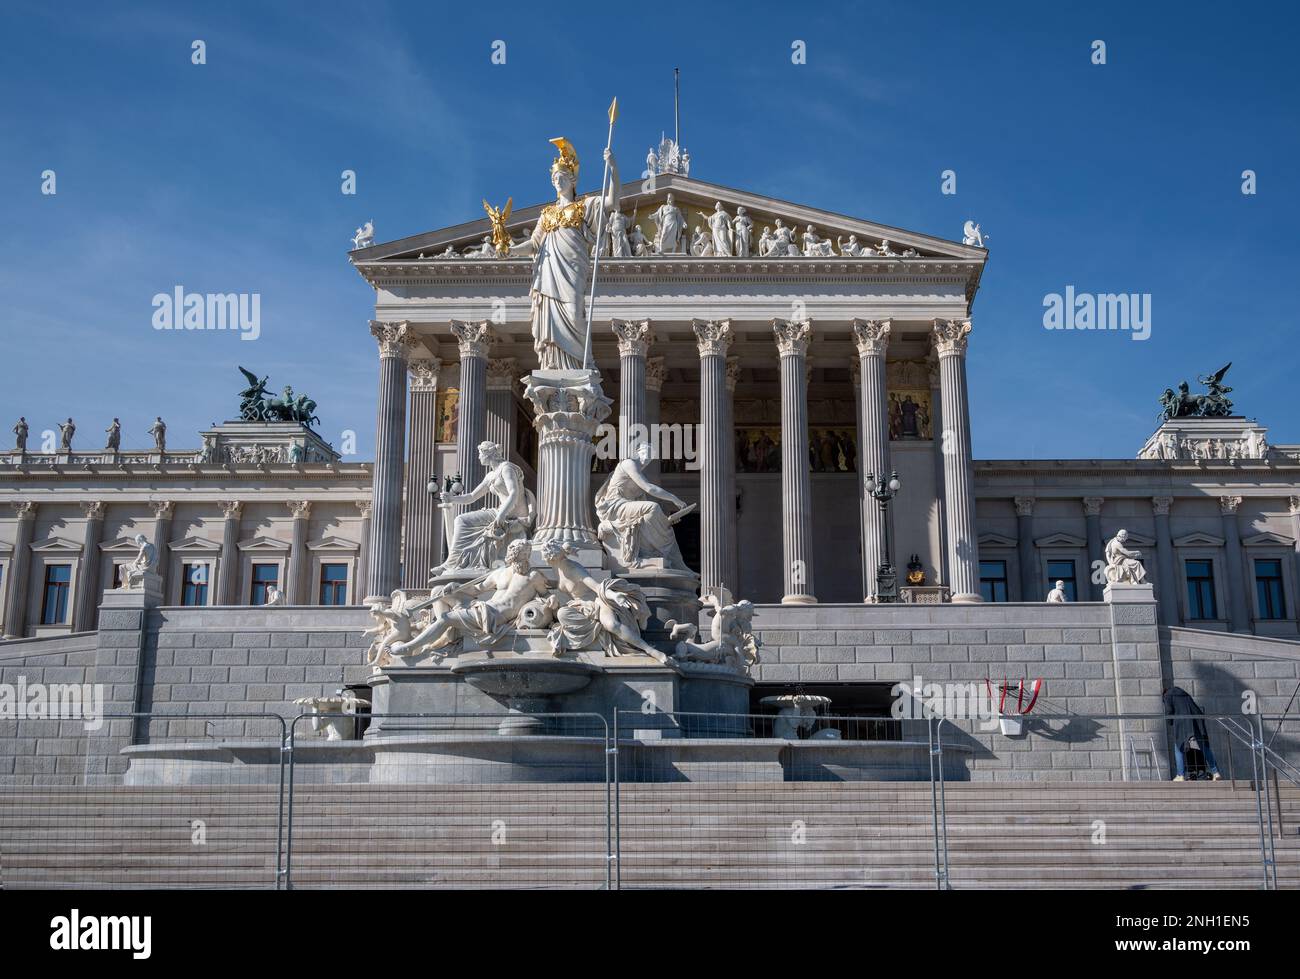 Vue des statues du Parlement autrichien à Vienne où les deux chambres du Parlement autrichien tiennent leurs sessions. Banque D'Images